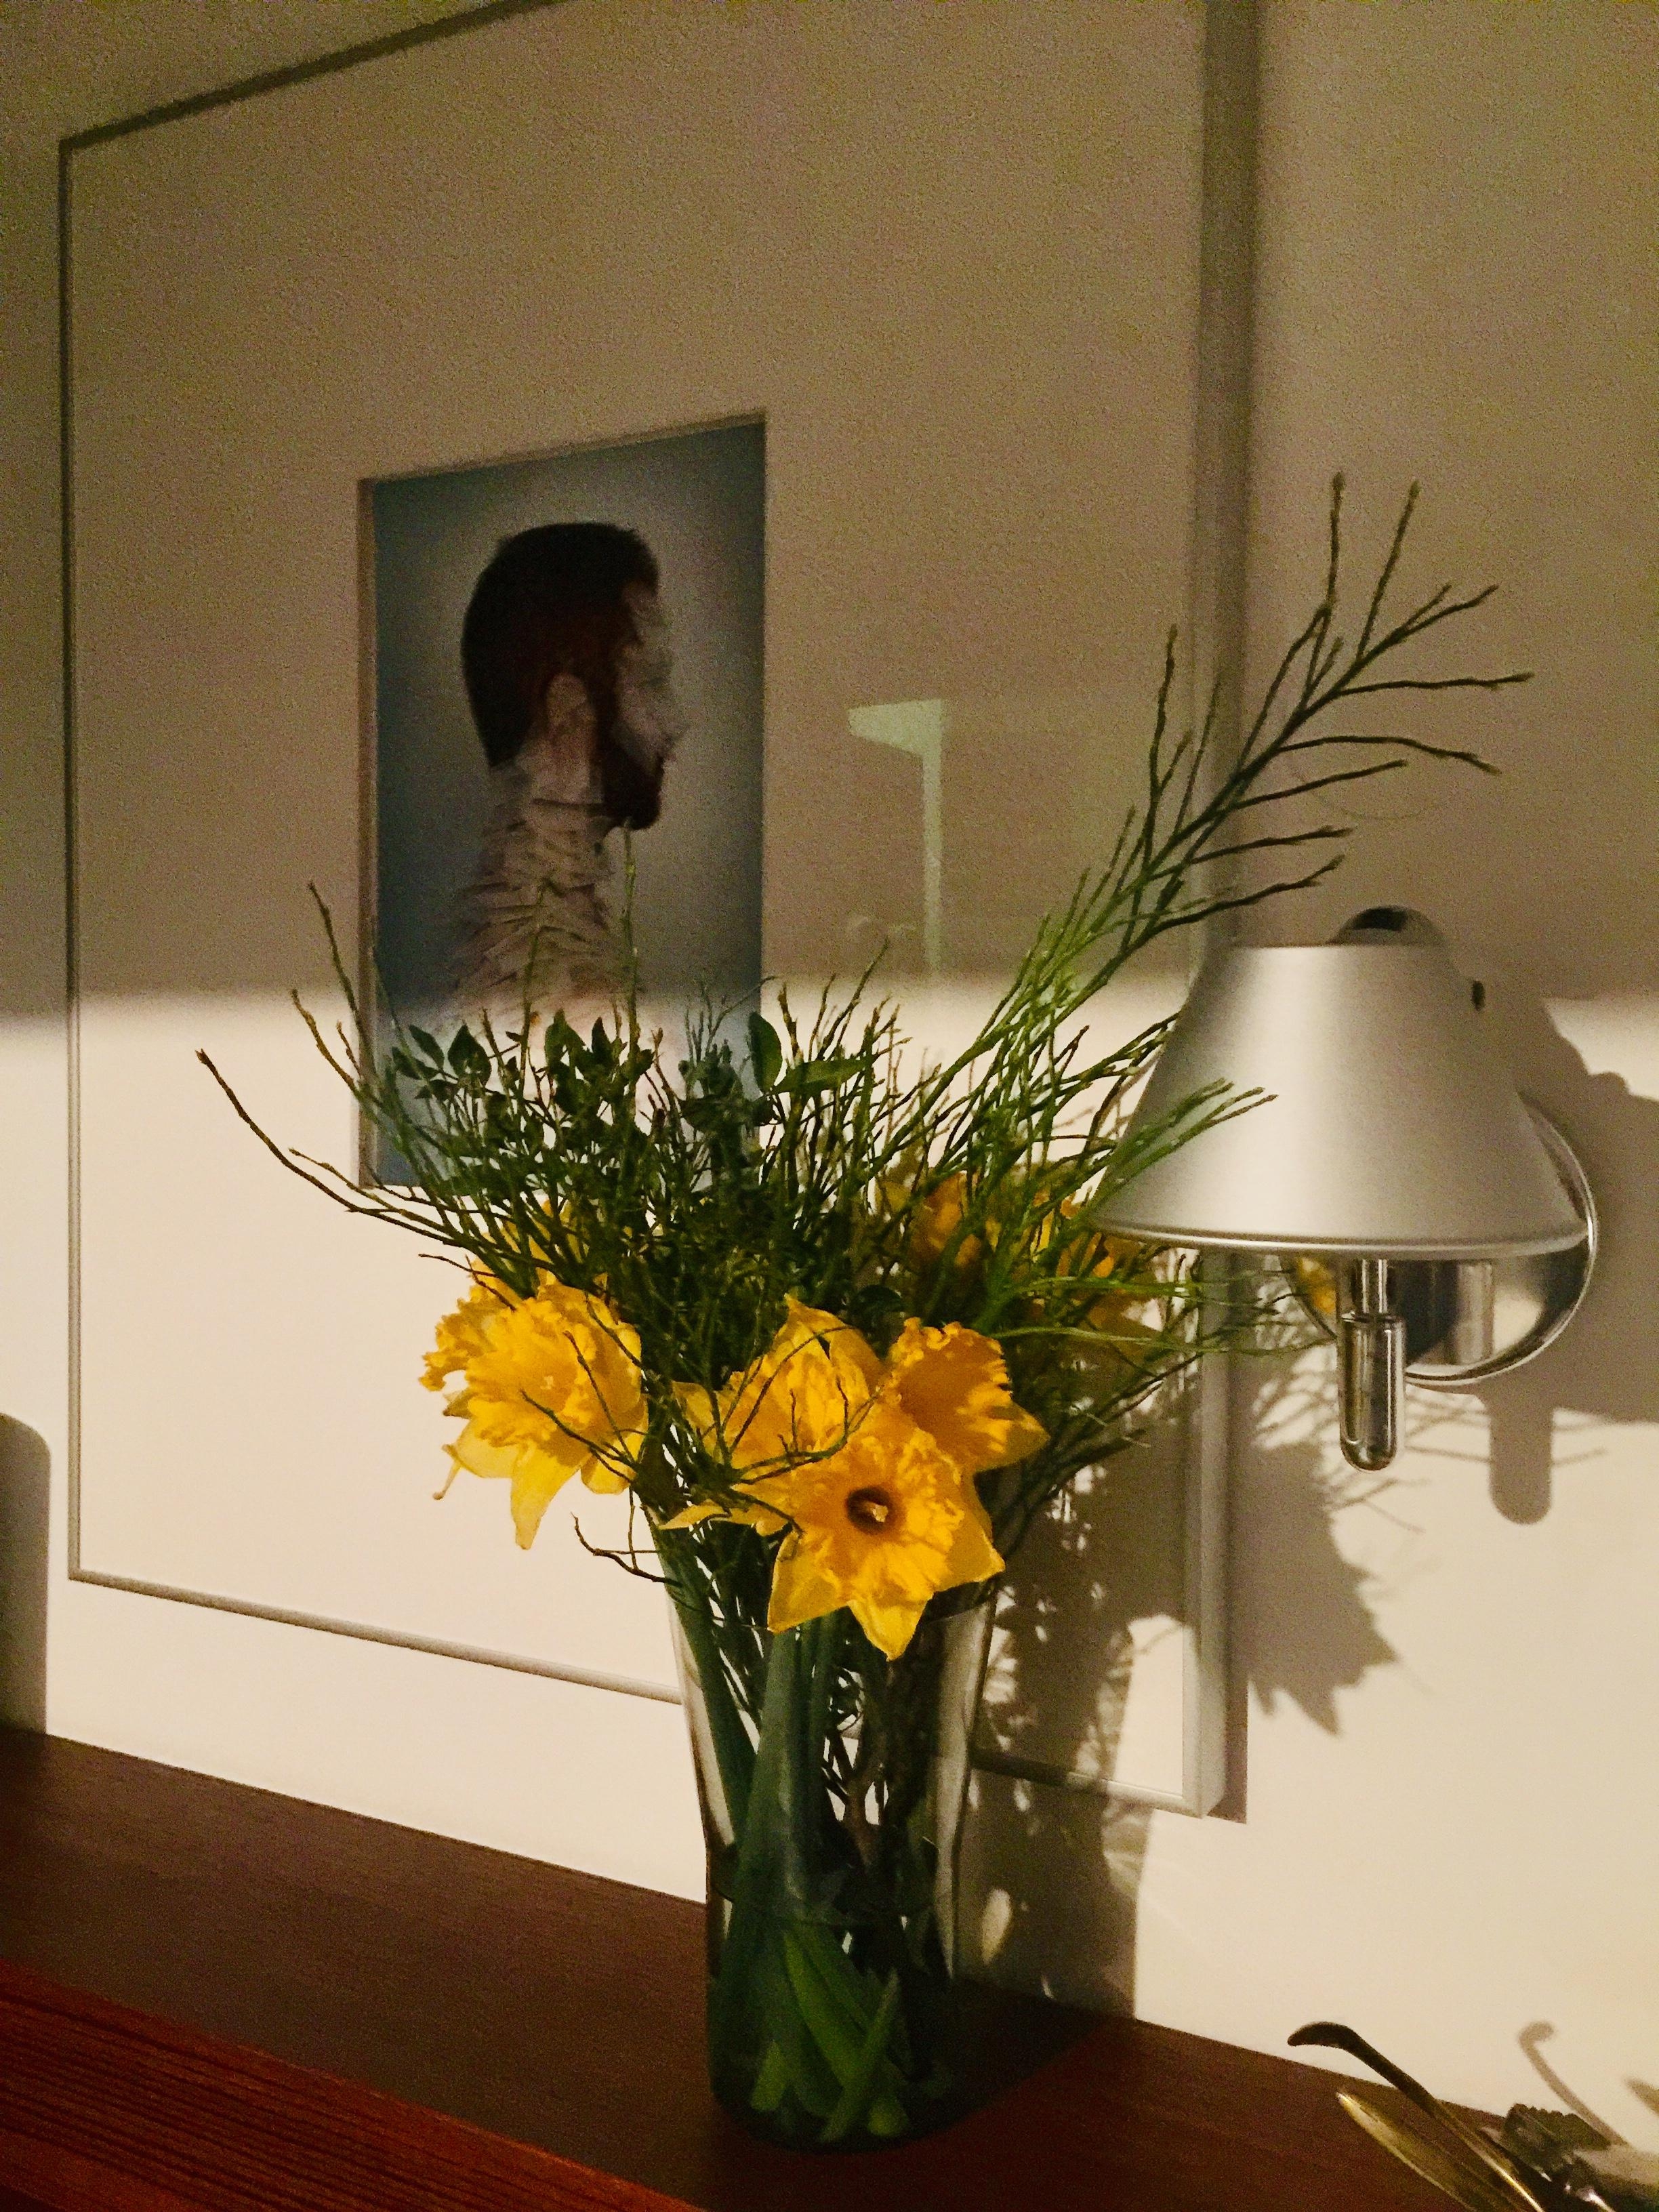 Ginger man#Paris#Yellow flower#Berlin